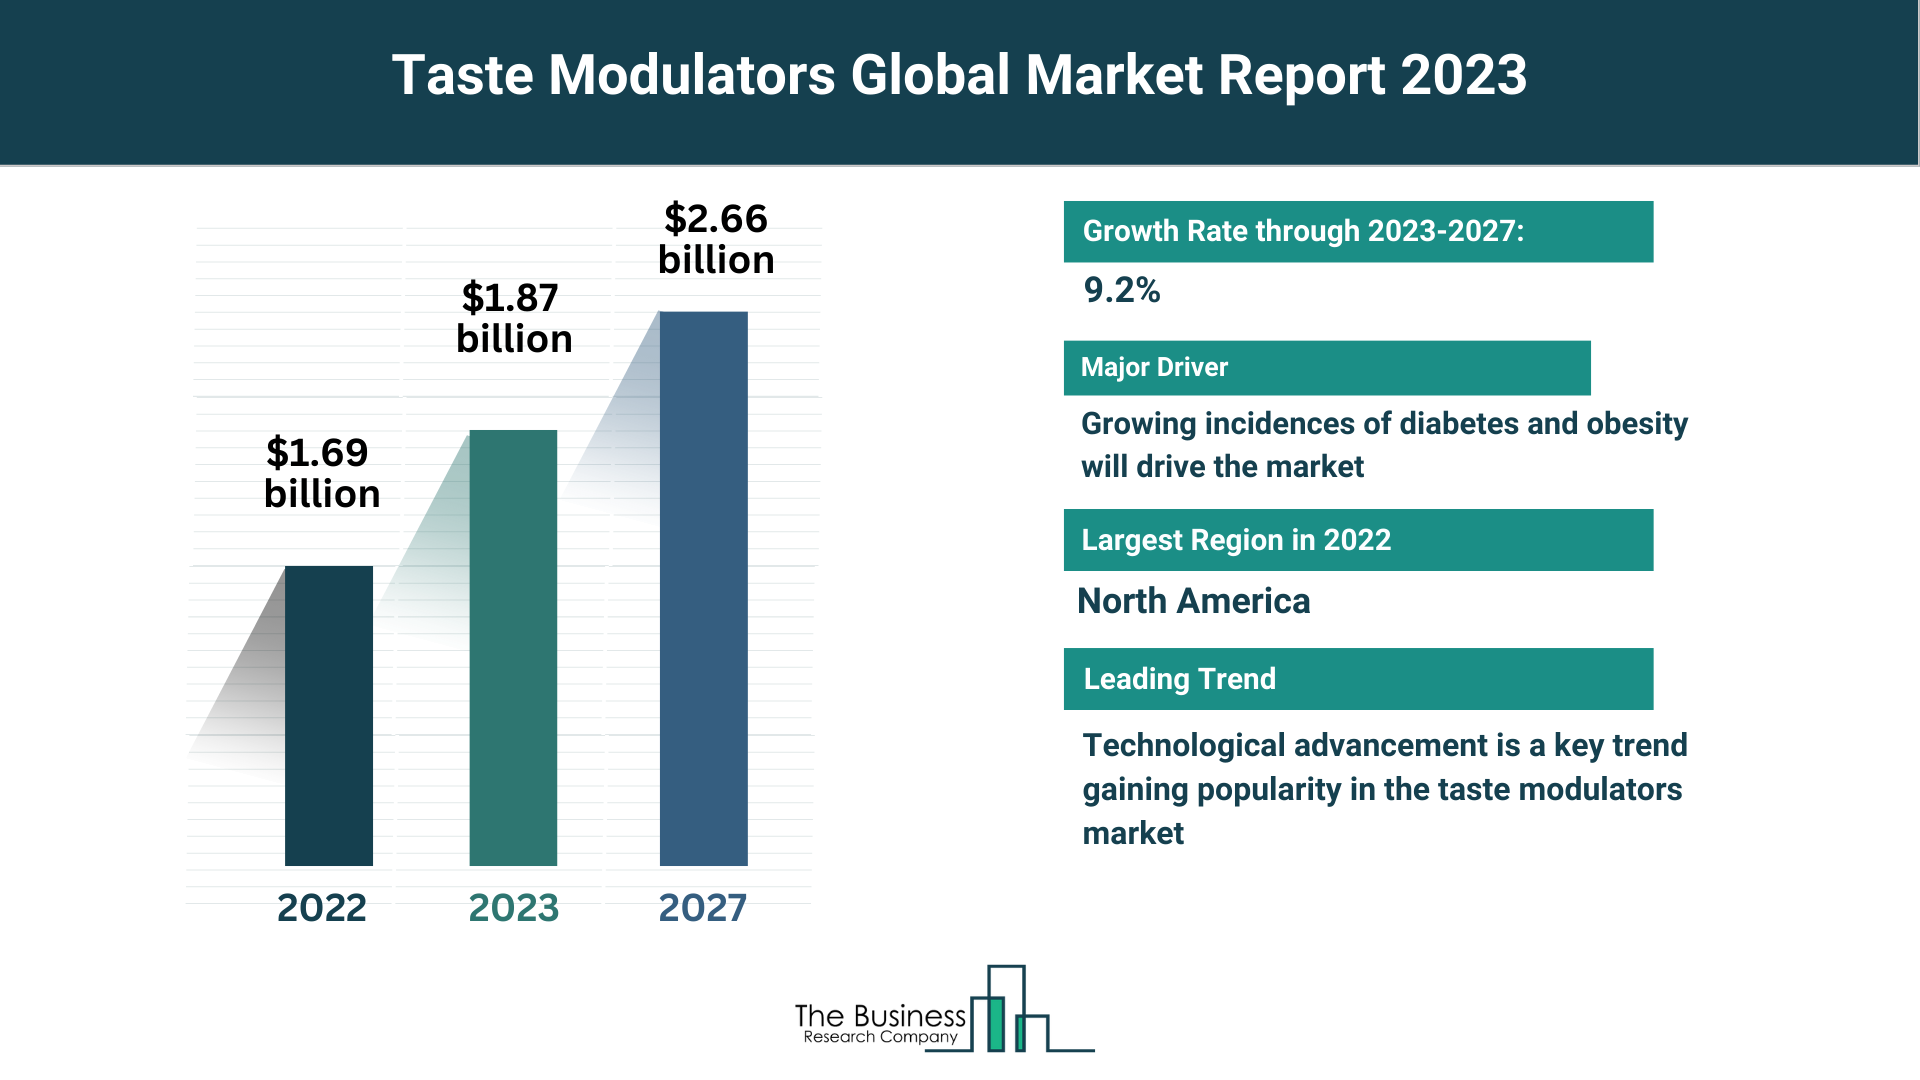 Global Taste Modulators Market